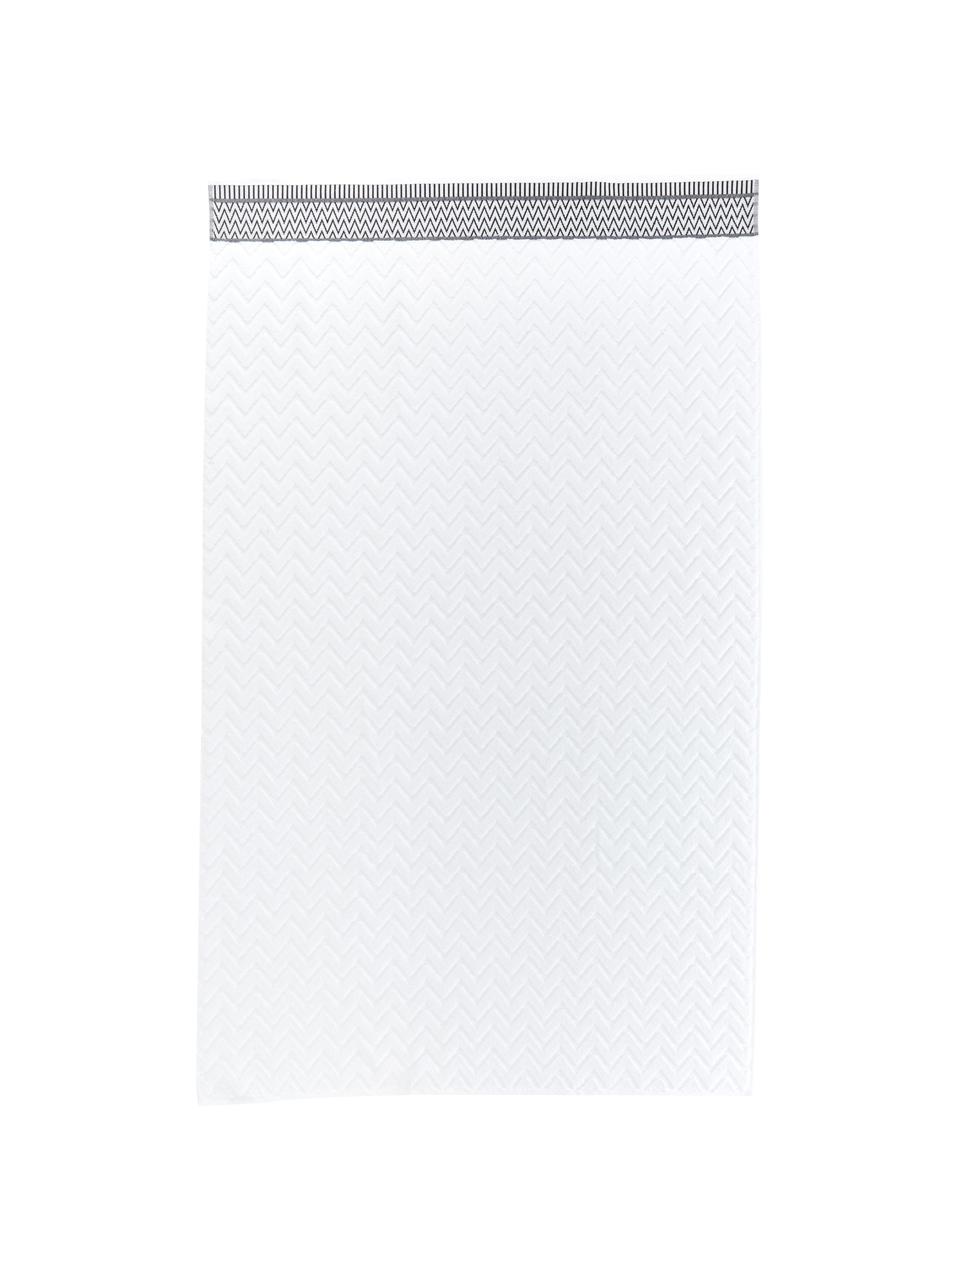 Ręcznik Karma, różne rozmiary, Biały, czarny, Ręcznik do rąk, S 50 x D 90 cm